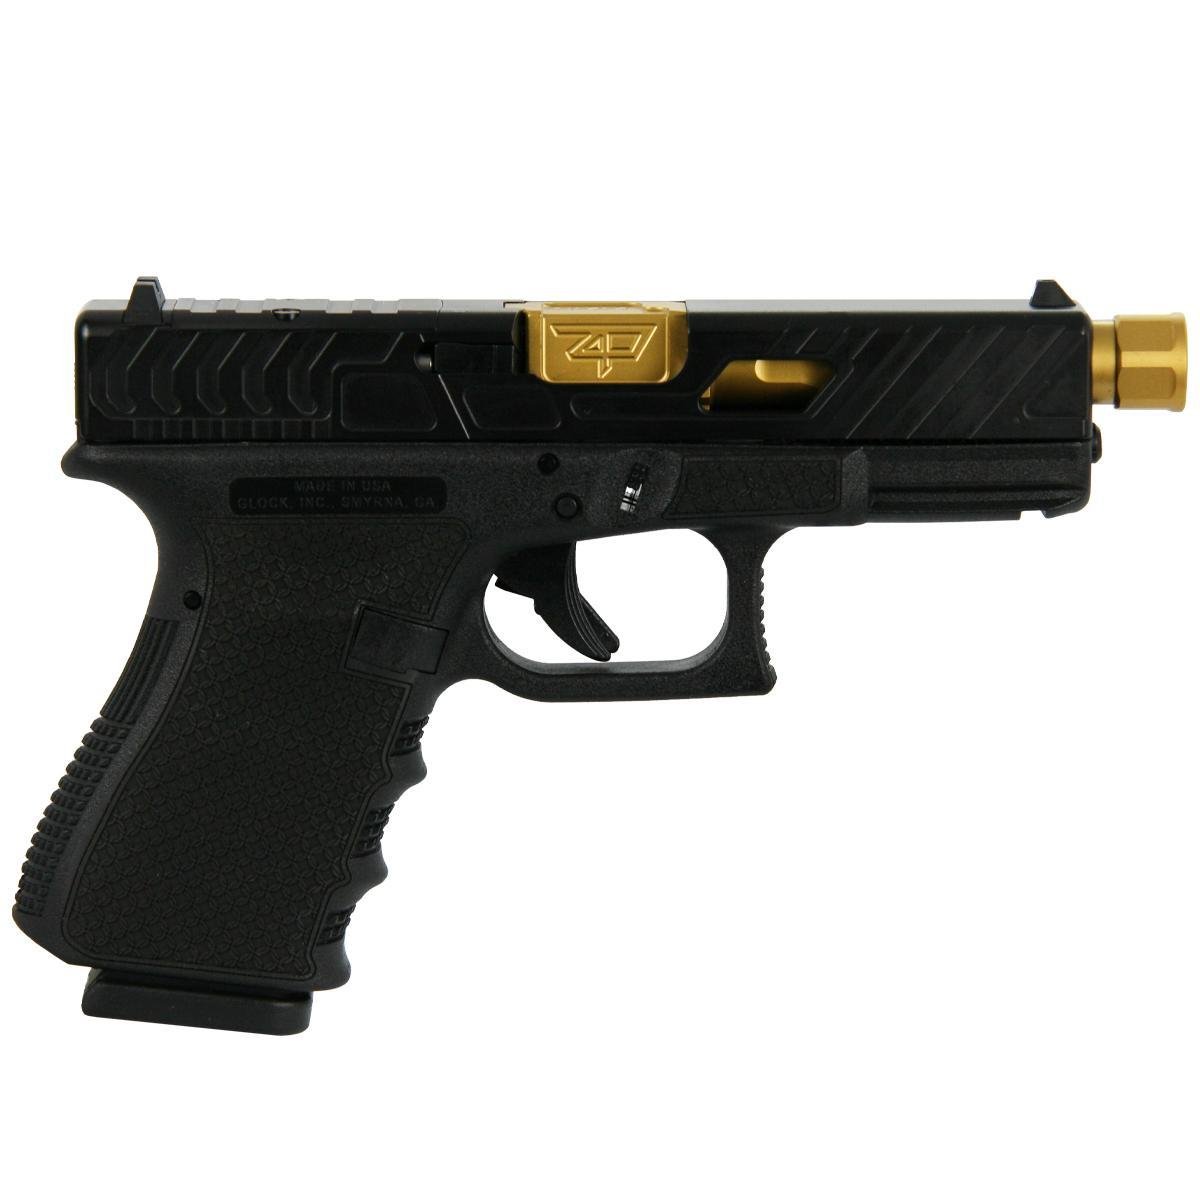 Glock 19 Gen 3 9mm 4.6" Barrel 15-Rounds Bear Cut Slide - $666.99 ($7.99 S/H on Firearms)